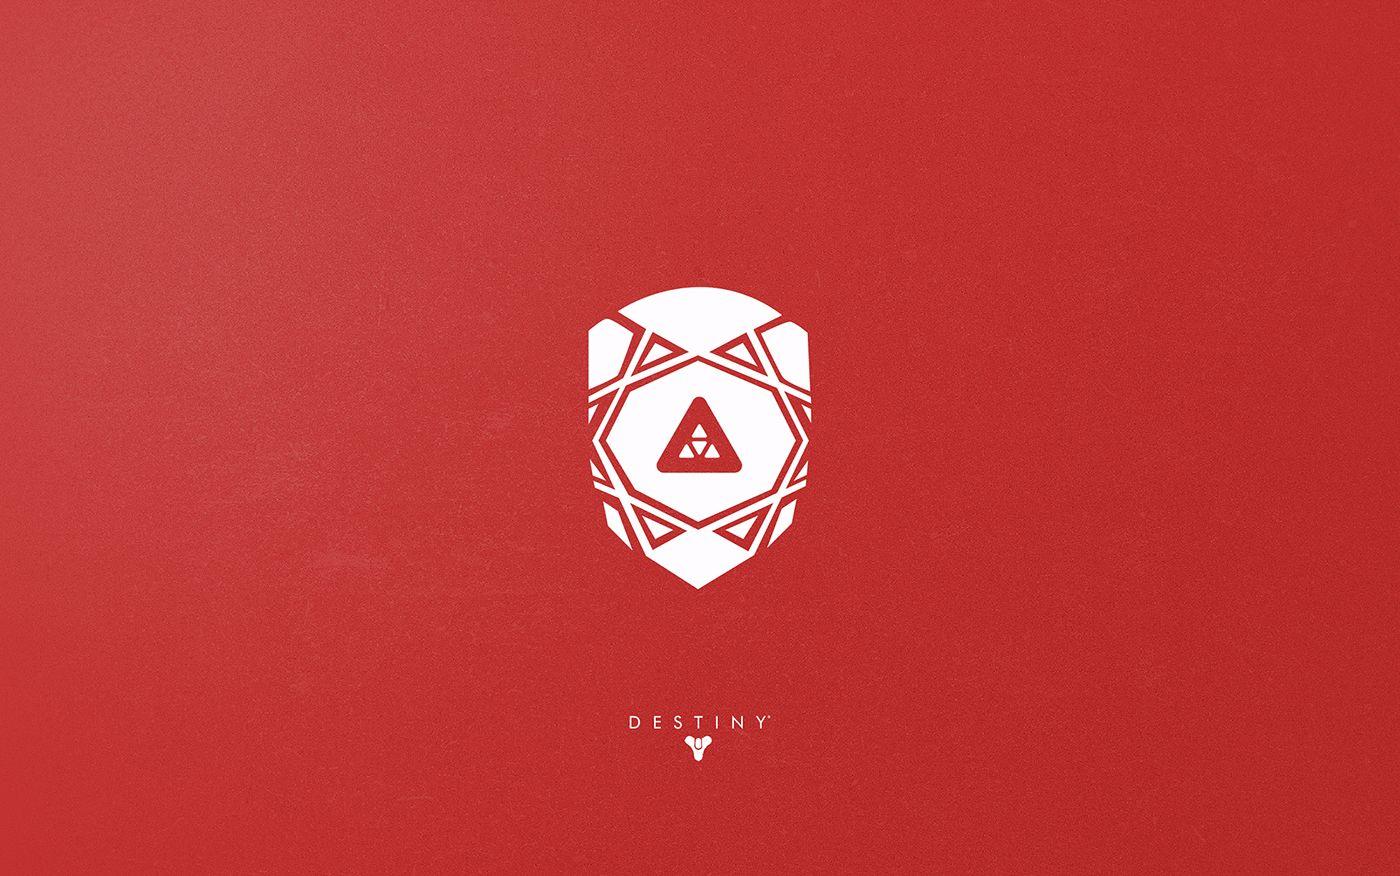 Red Destiny Logo - Destiny Emblem Wallpapers on Behance